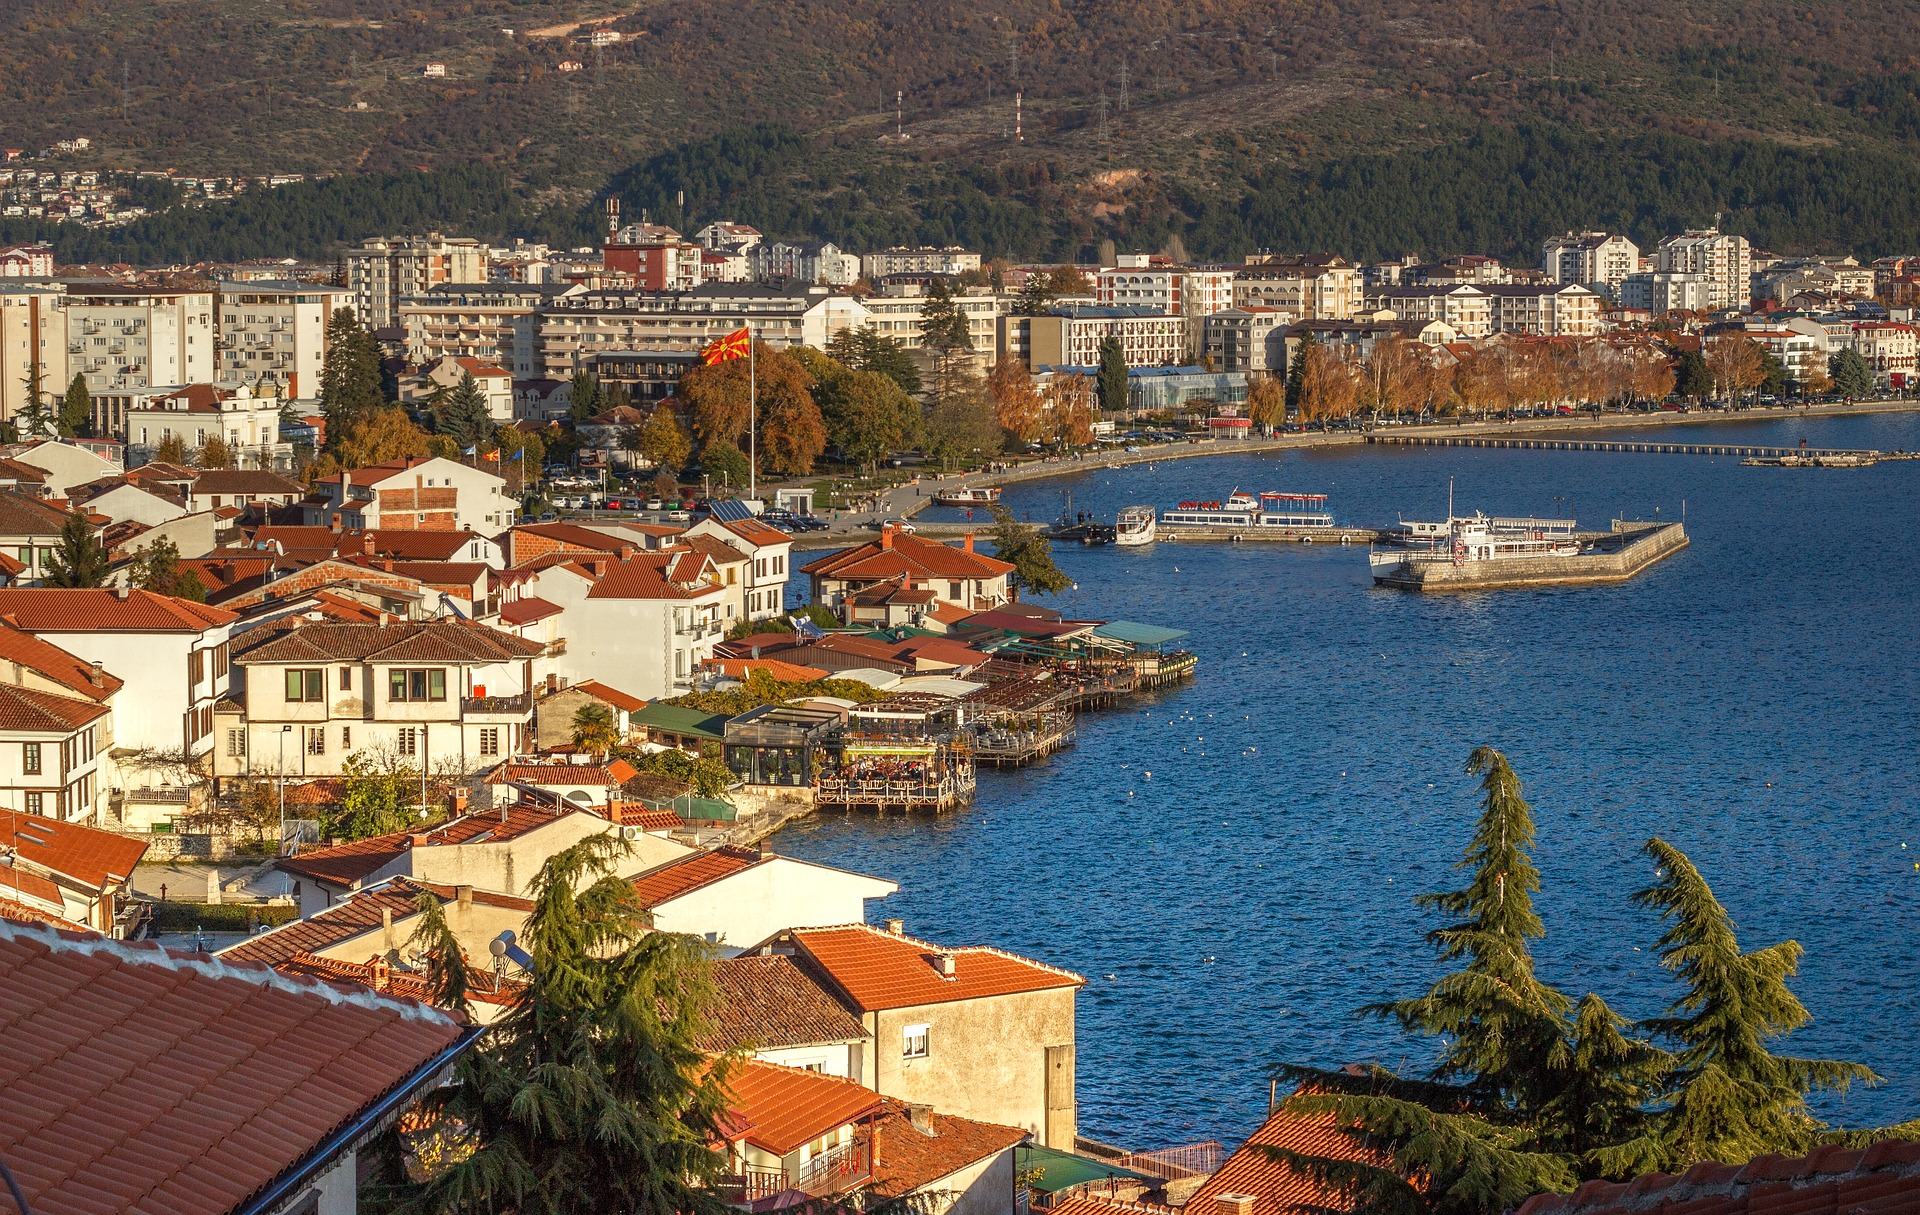 The Ohrid Harbor, Macedonia